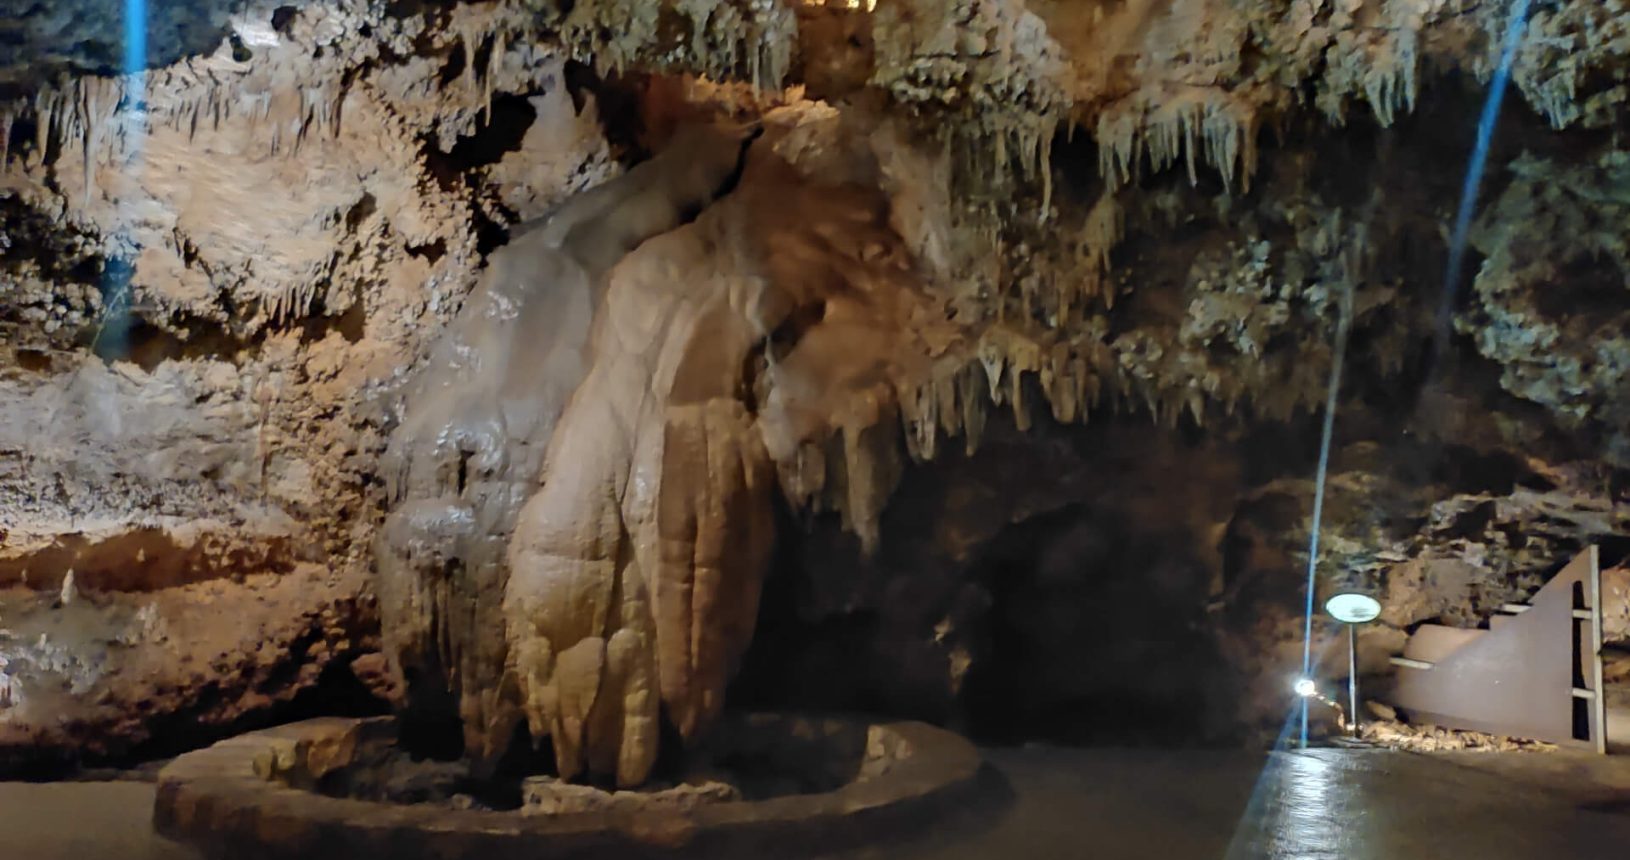 A huge creature in Lipa Cave